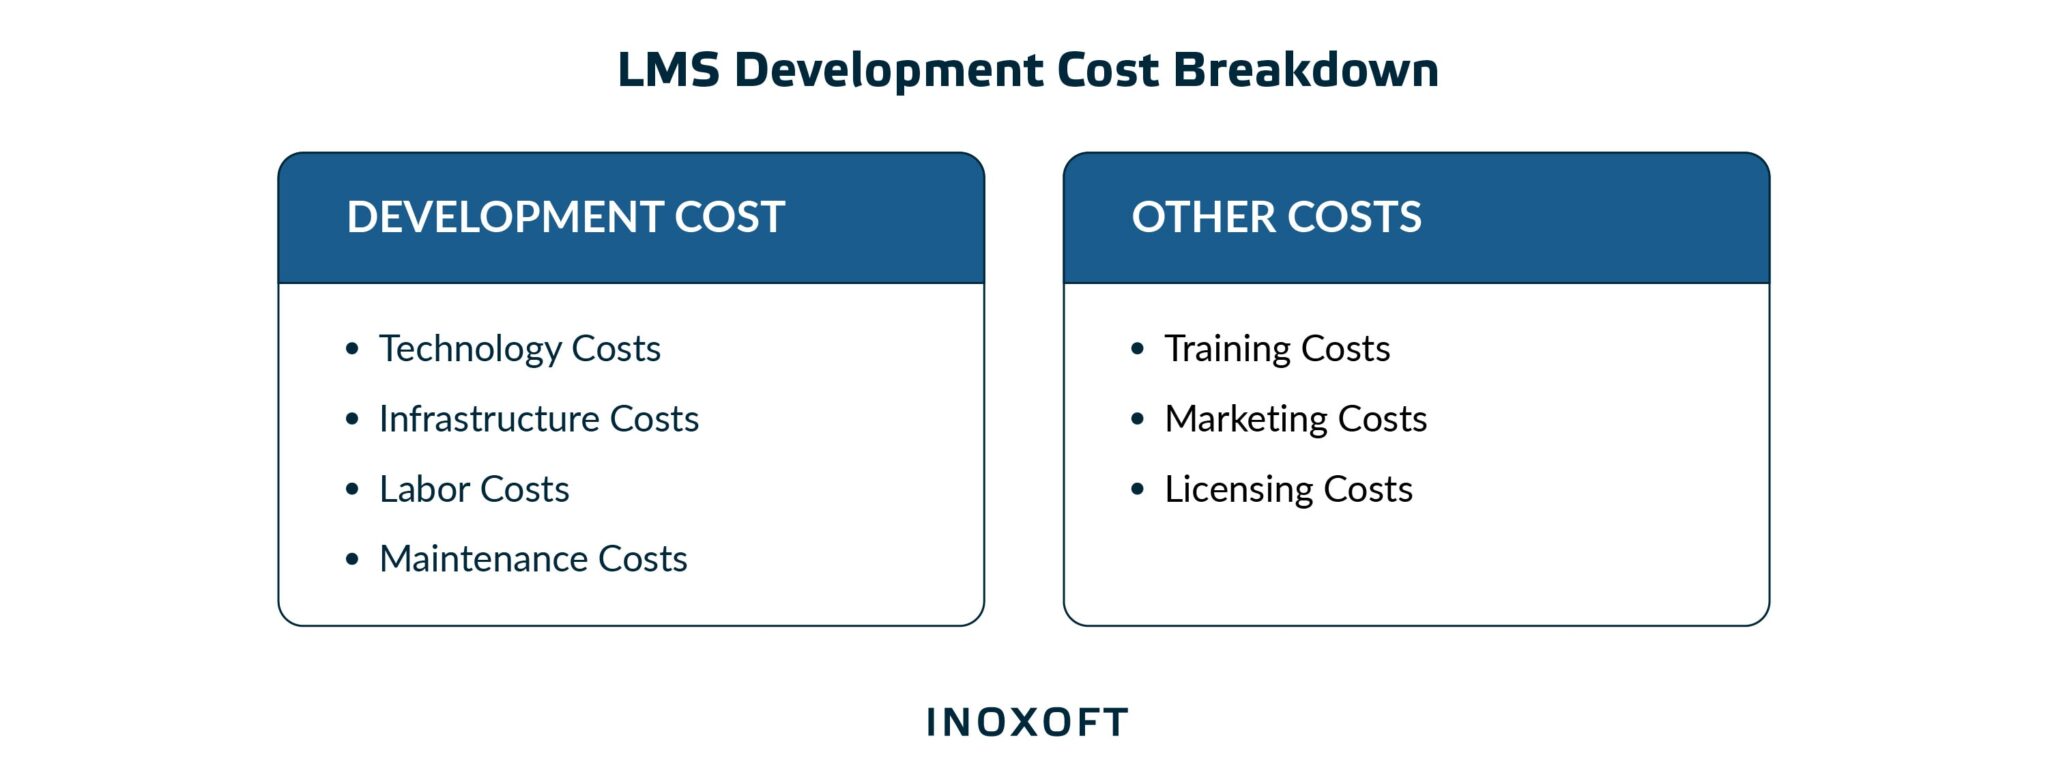 LMS Development Cost Breakdown